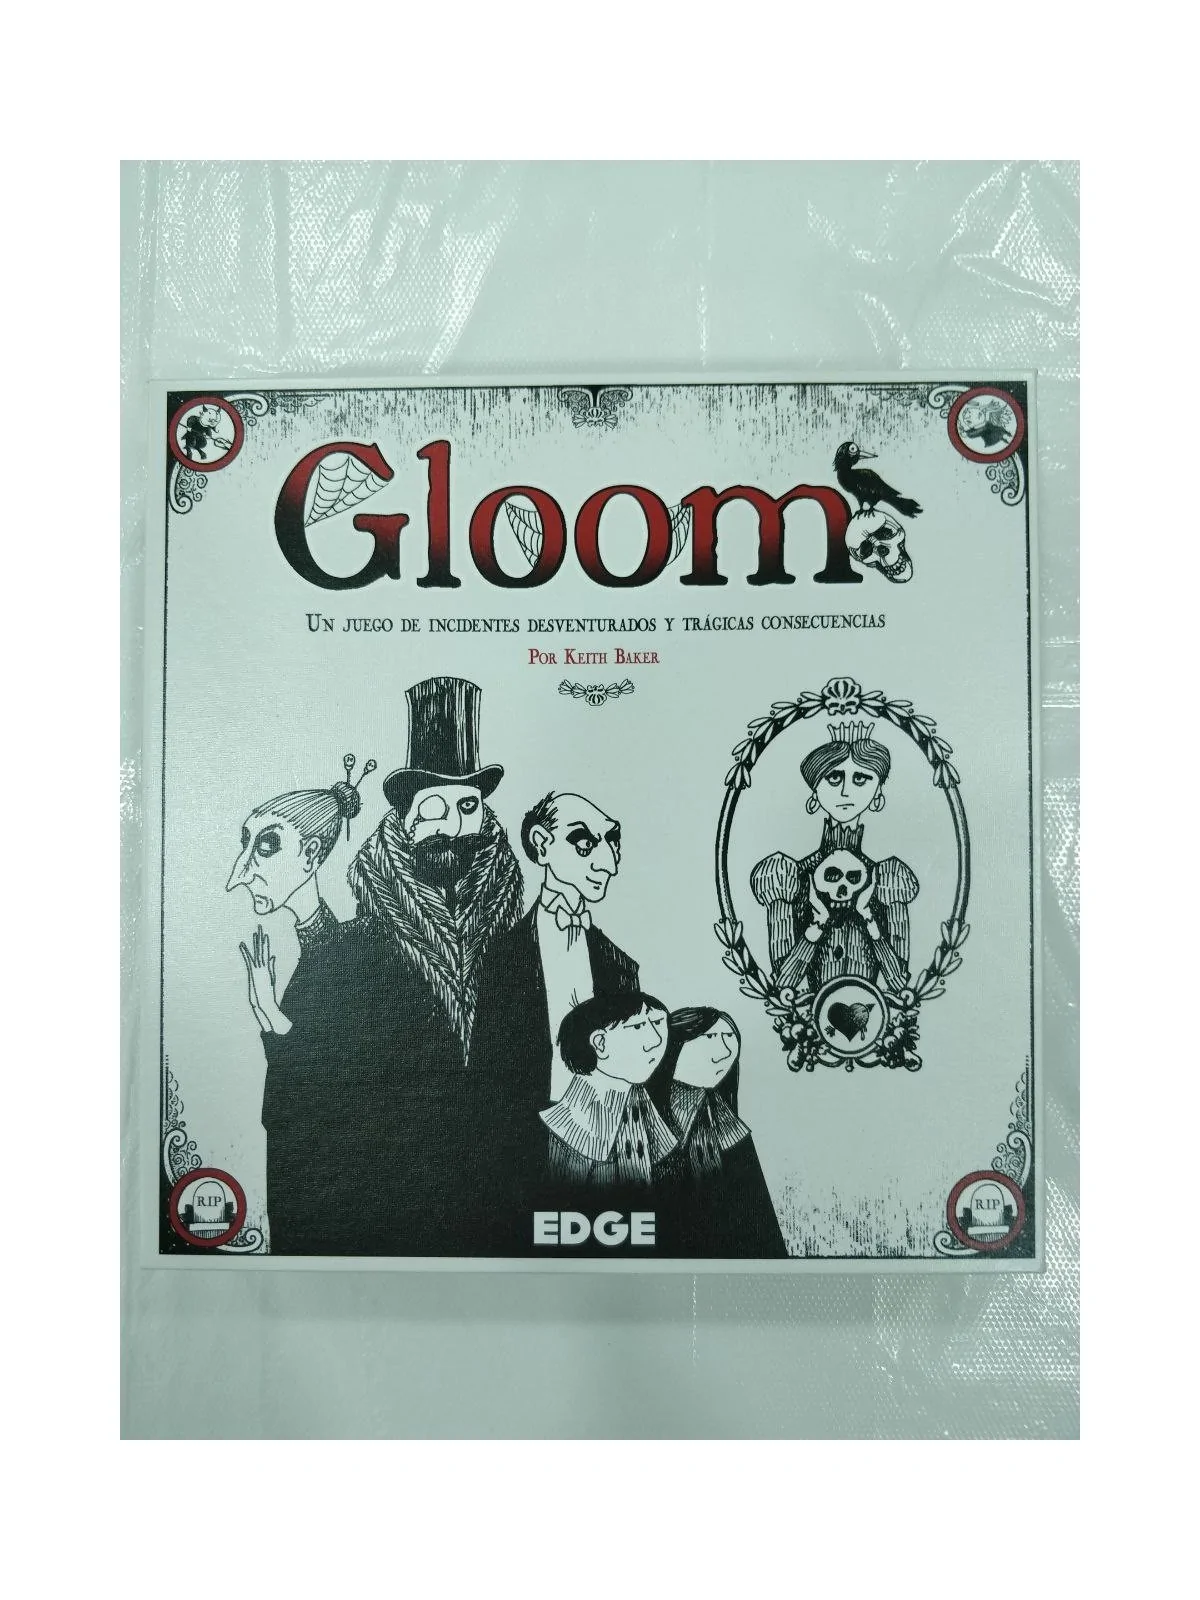 Comprar Gloom [SEGUNDA MANO] barato al mejor precio 15,00 € de 